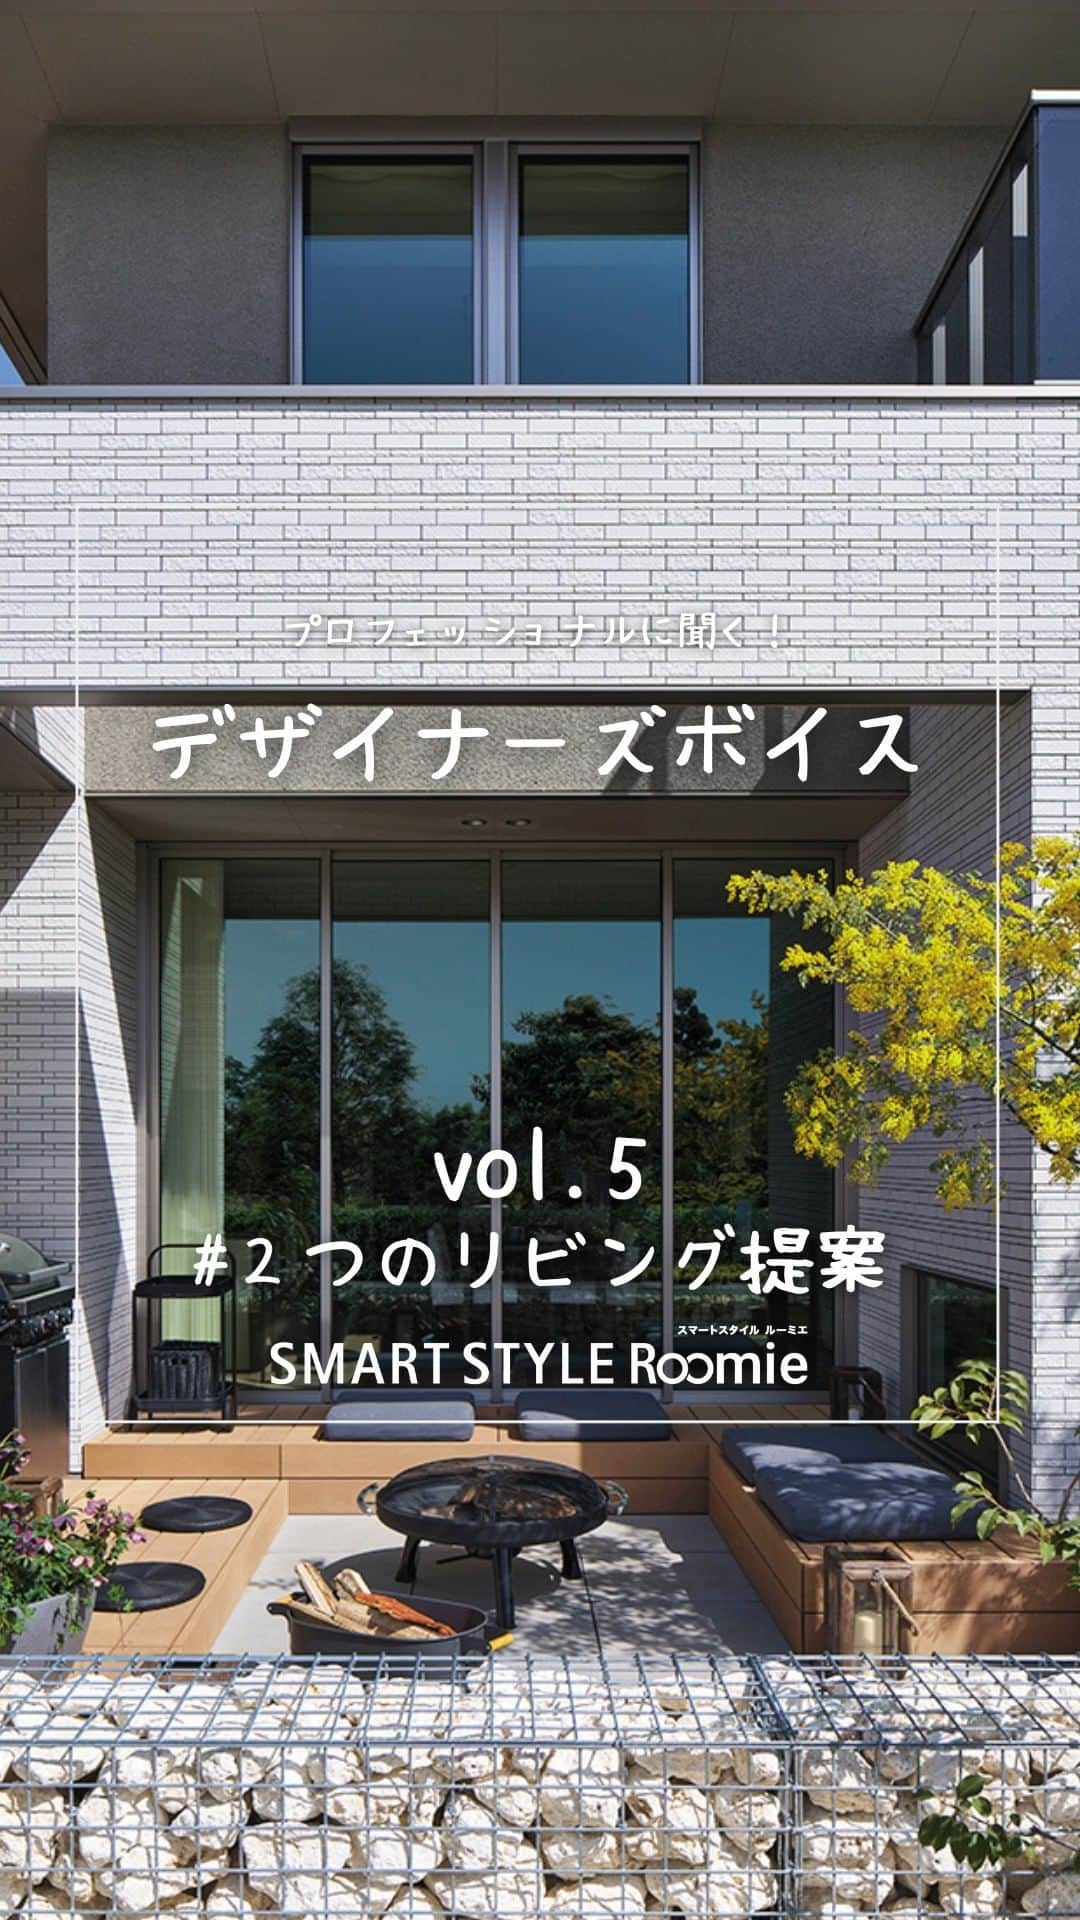 ミサワホーム株式会社のインスタグラム：「@misawahomes⠀ 【プロフェッショナルに聞く！】 プロの「おすすめ」を満載した、新時代の企画住宅「SMART STYLE Roomie」  商品開発を手がけた課長代理の富田にインタビューを実施しました。 第2回は「２つのリビング提案」です。  ▼こちらもチェック！ https://www.misawa.co.jp/kodate/syouhin/smart_style_roomie/  ￣￣￣￣￣￣￣￣￣￣￣￣￣￣￣ #misawahome  #ミサワホーム  #ミサワホーム注文住宅  #新築戸建て #戸建て  #自由設計の家  #住宅デザイン  #デザイナーズ住宅  #デザイナーズハウス #デザイナーズ物件 #理想の家づくり  #建築実例  #ワークスペース #家事動線の良い間取り #収納アイディア #高天井 #食卓を楽しむ #ペニンシュラキッチン #オープンキッチン #ダイニングキッチン #新商品 #新商品発売  #商品開発 #これからの家づくり #シンプルモダンインテリア #ミニマルインテリア #アウトリビング #モデルルーム #インタビュー記事 #インタビュー動画」